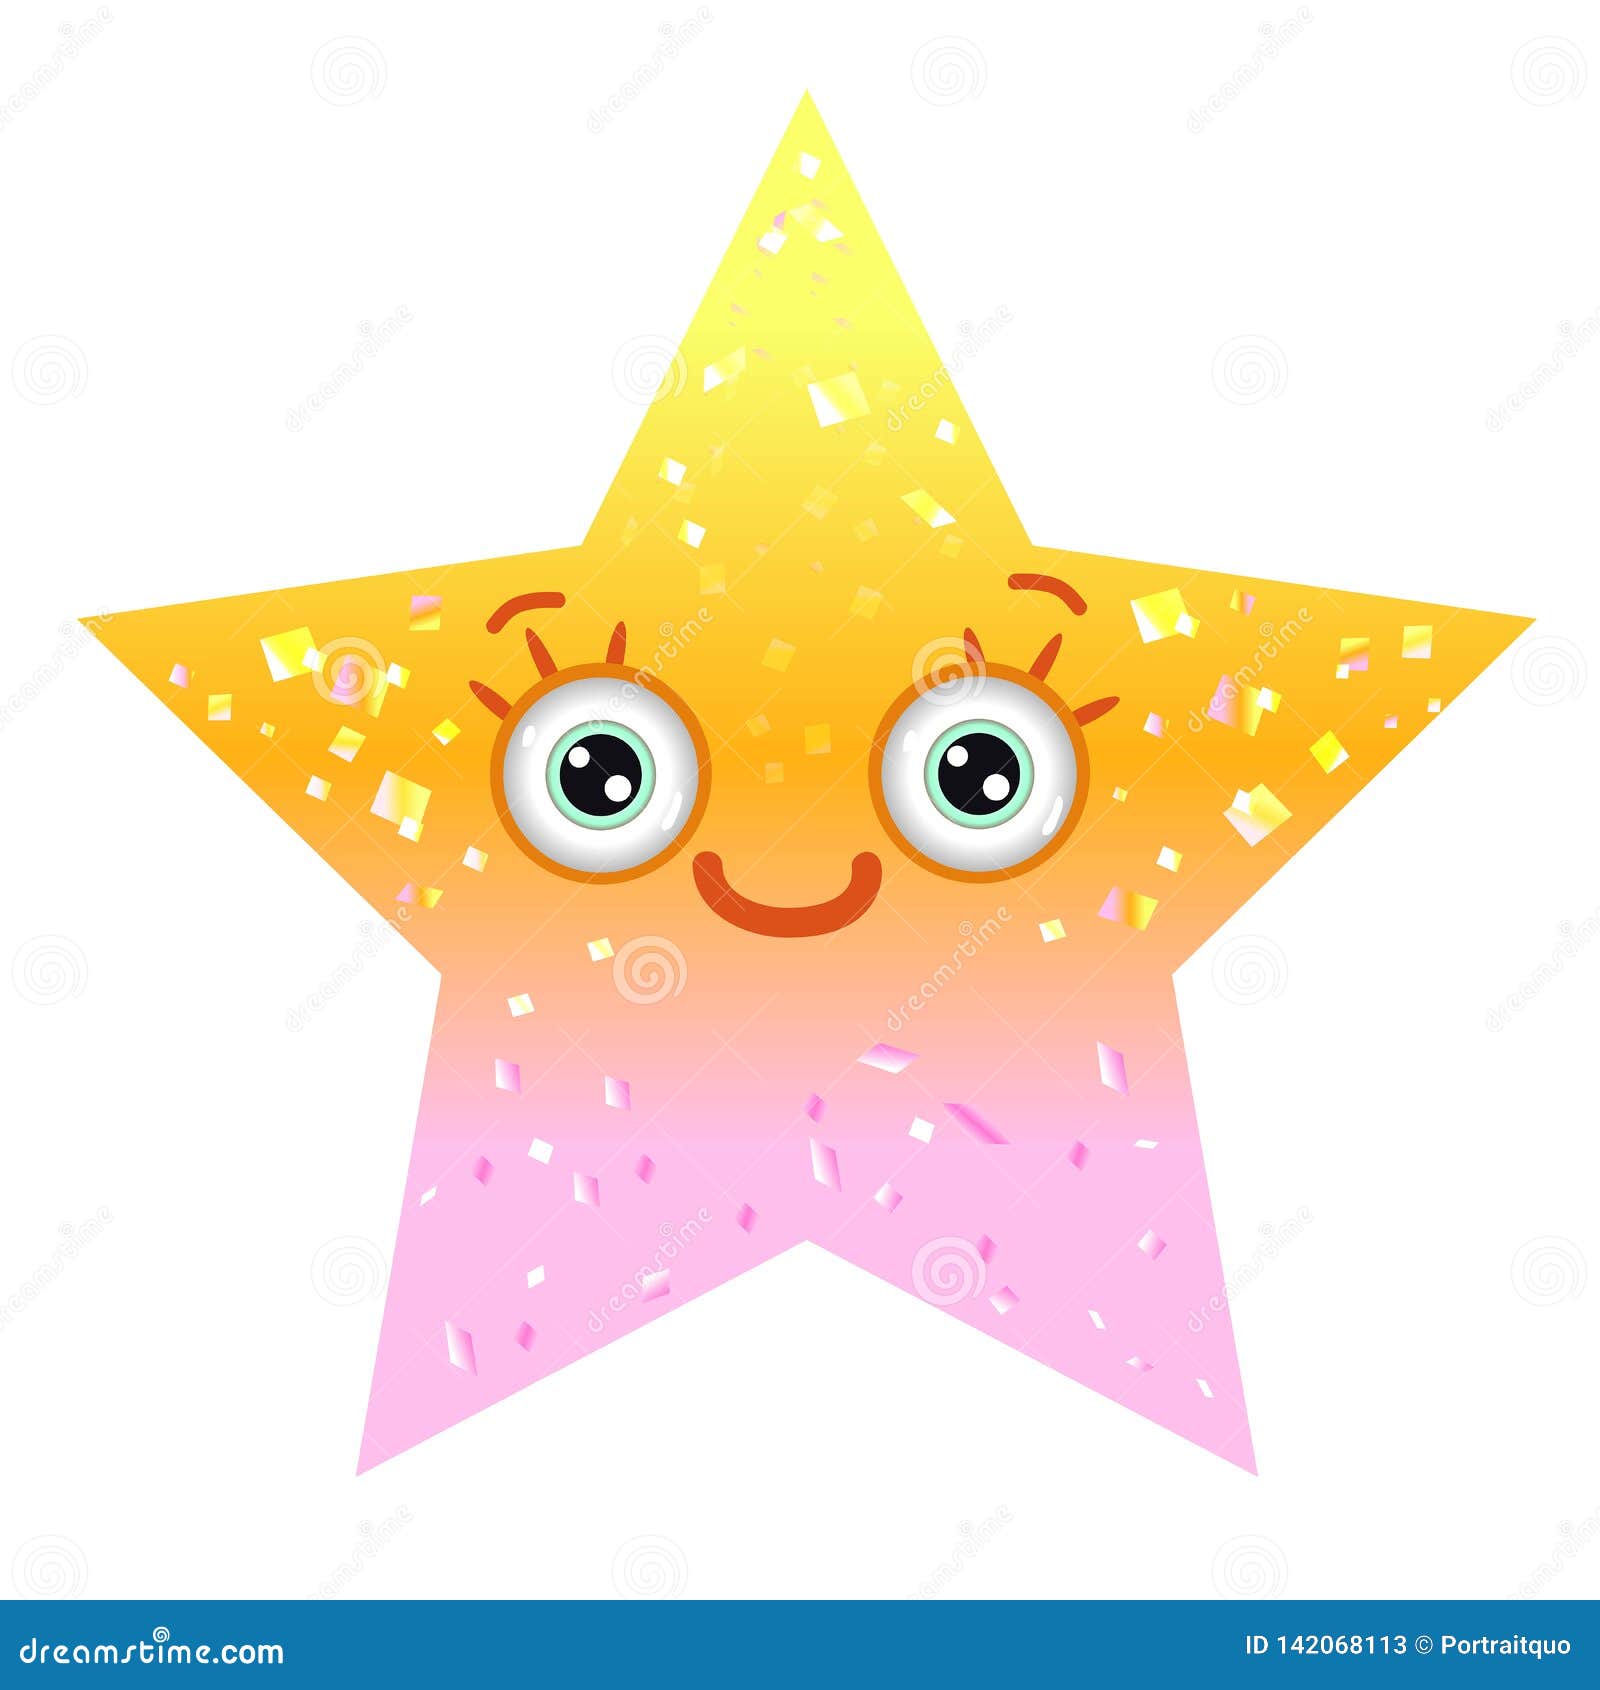 Lächelnd Gelbe Sterne Emoji Gesicht Comicfigur Mit Sonnenbrille Stock  Vektor Art und mehr Bilder von Astronomie - iStock